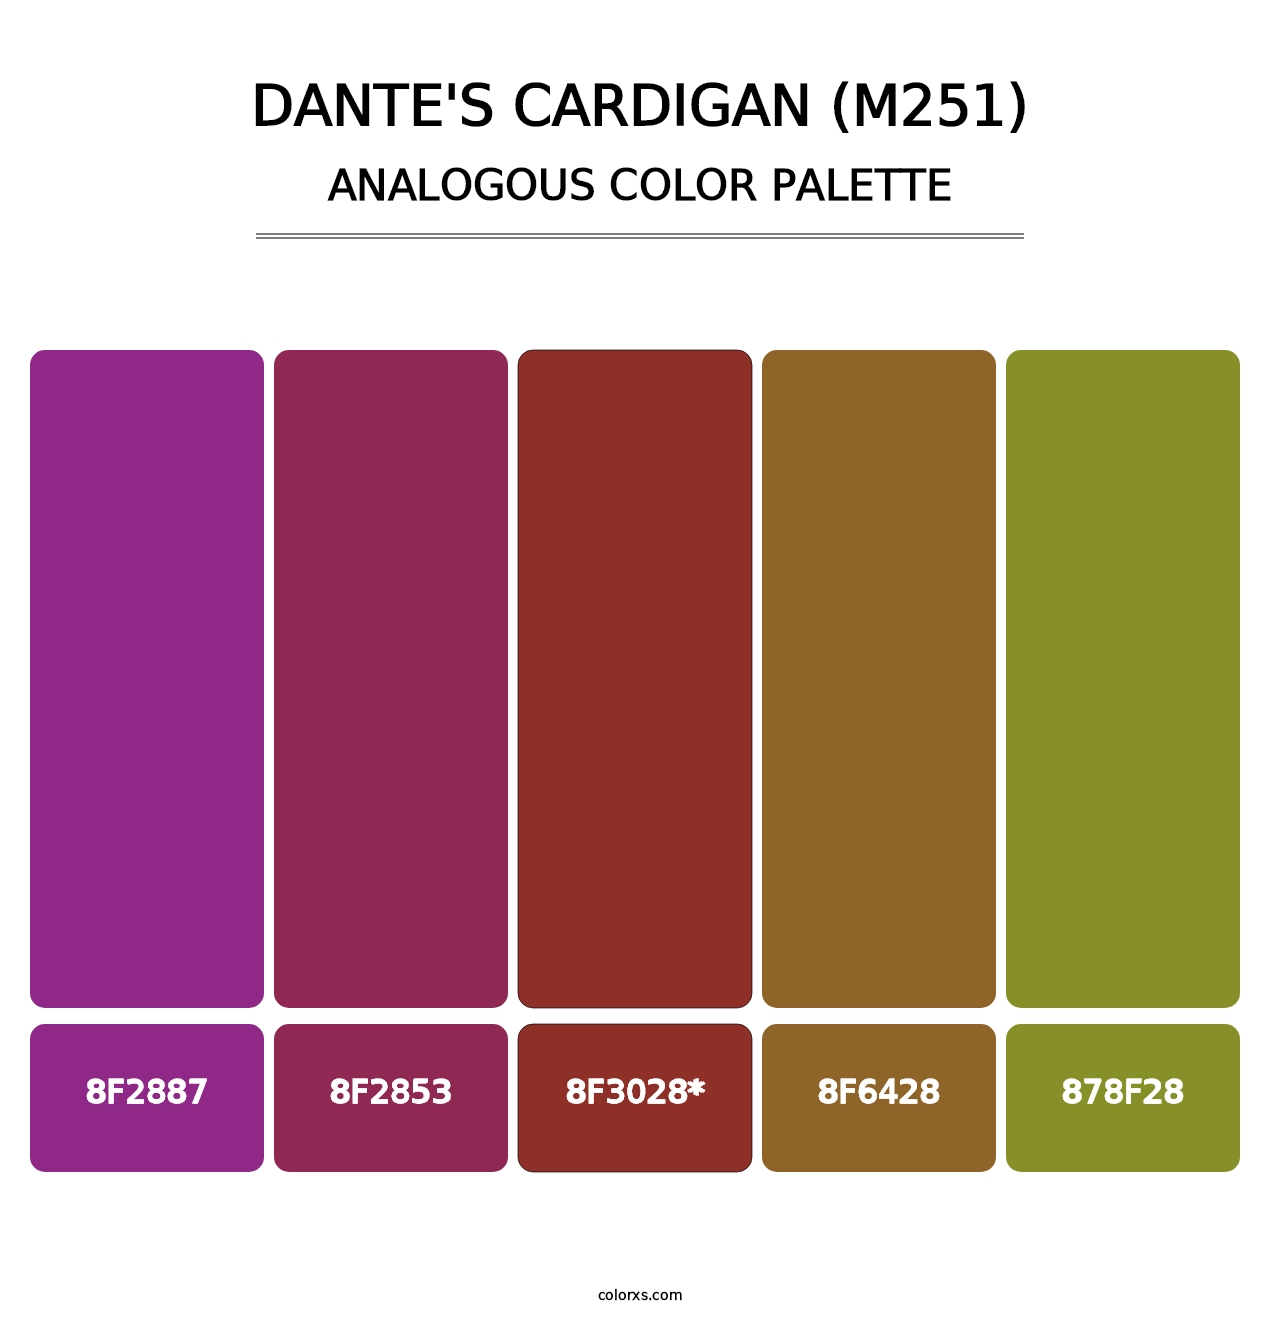 Dante's Cardigan (M251) - Analogous Color Palette